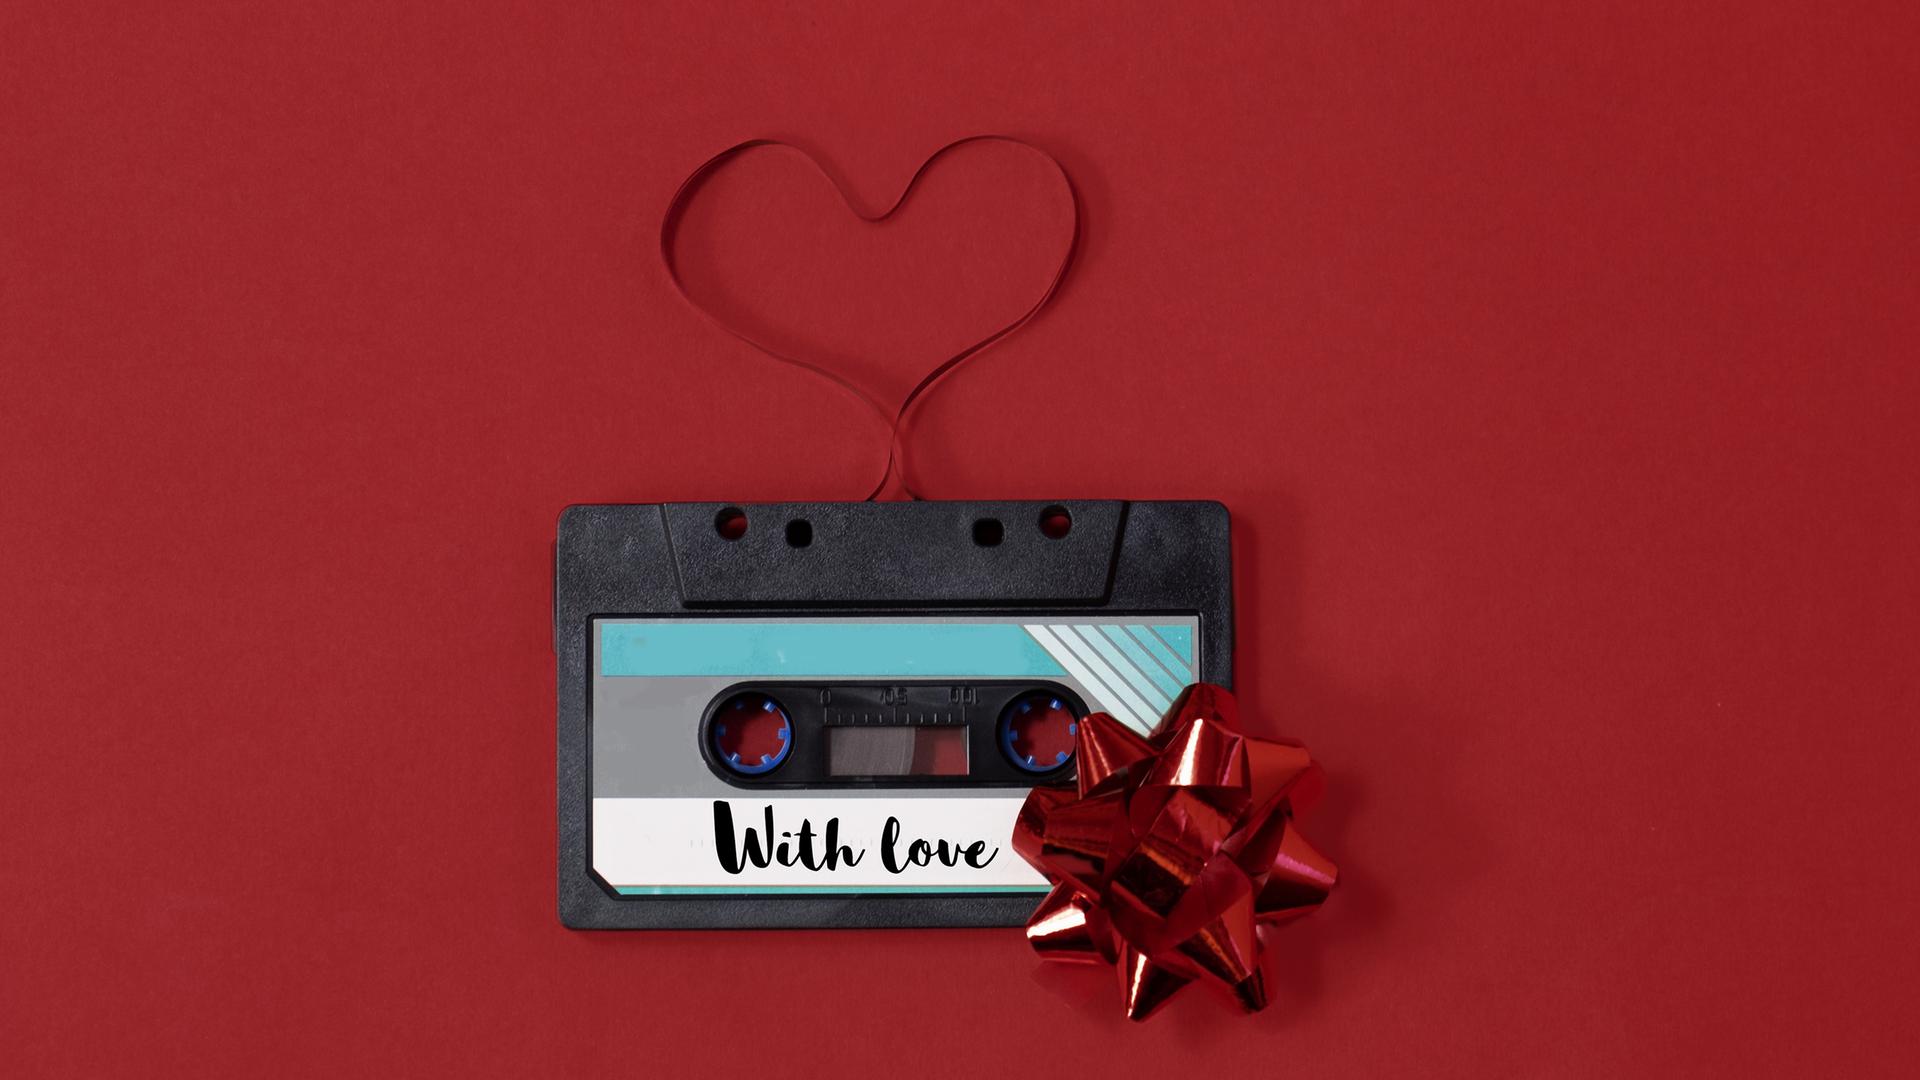 Eine Kassette auf der "With Love" steht und deren Tape zu einem Herz ausgerollt wurde.